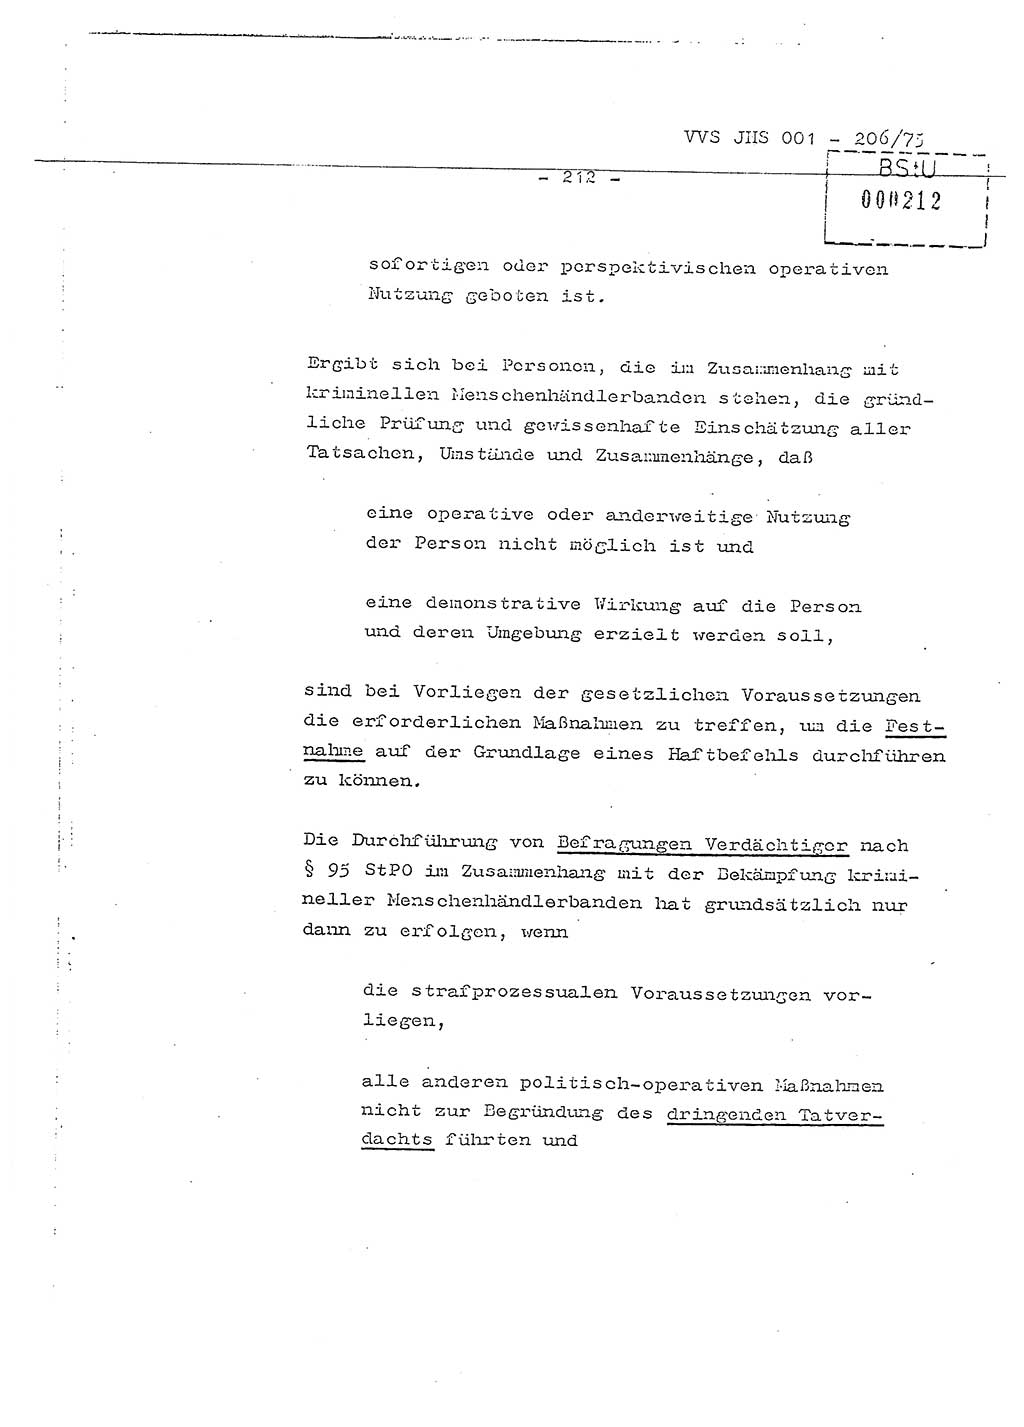 Dissertation Generalmajor Manfred Hummitzsch (Leiter der BV Leipzig), Generalmajor Heinz Fiedler (HA Ⅵ), Oberst Rolf Fister (HA Ⅸ), Ministerium für Staatssicherheit (MfS) [Deutsche Demokratische Republik (DDR)], Juristische Hochschule (JHS), Vertrauliche Verschlußsache (VVS) 001-206/75, Potsdam 1975, Seite 212 (Diss. MfS DDR JHS VVS 001-206/75 1975, S. 212)